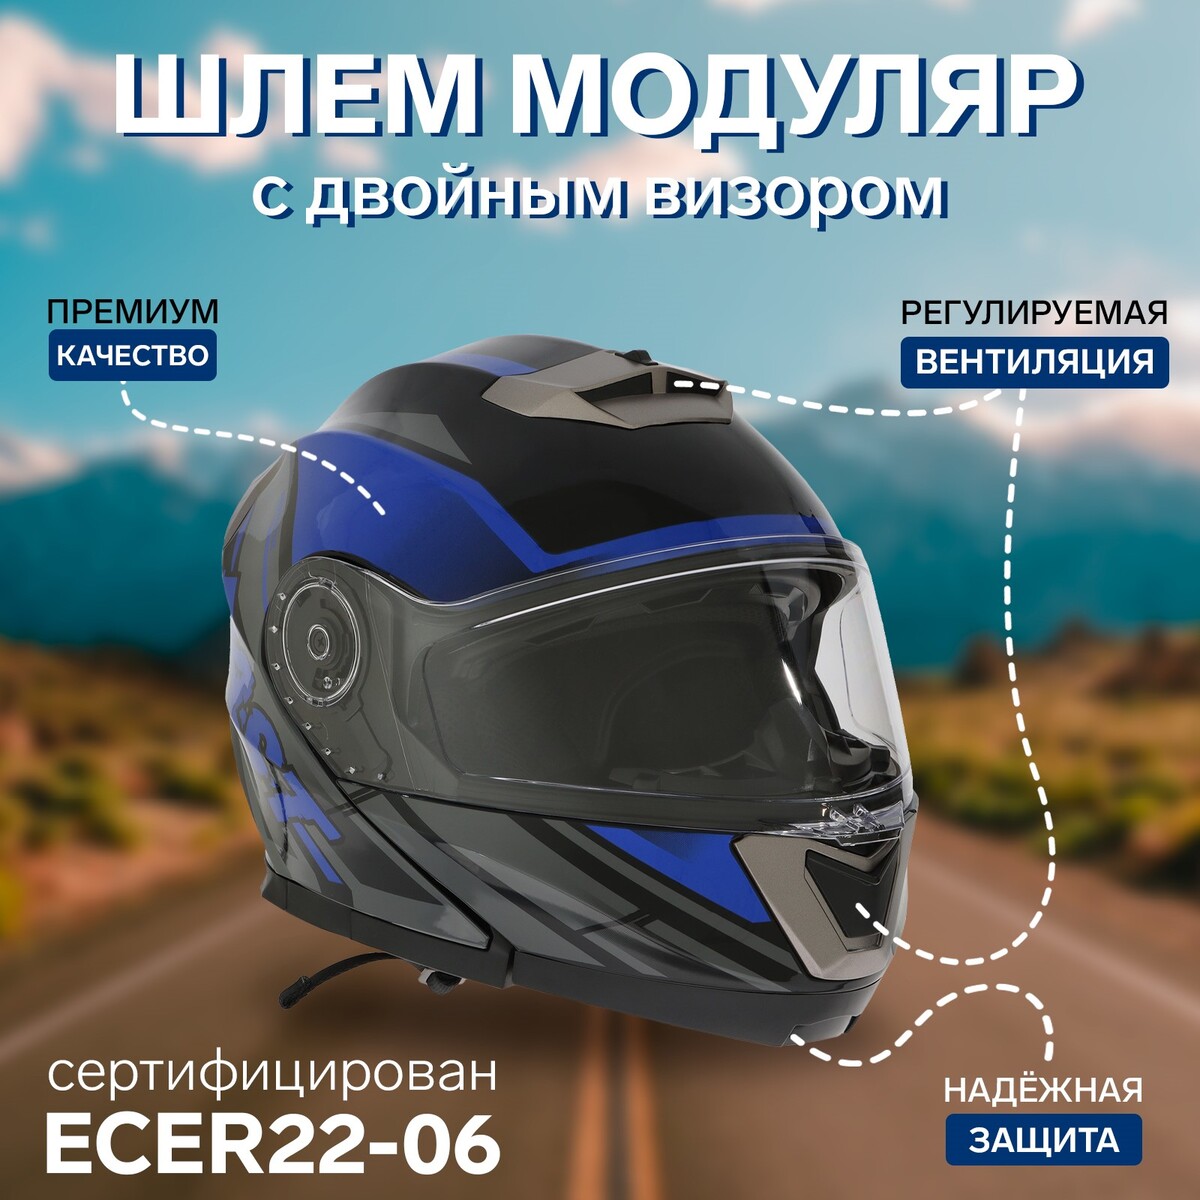 Шлем модуляр с двумя визорами, размер l (59-60), модель - bld-160e, черно-синий шлем puky fullface m 54 58 синий ns01134